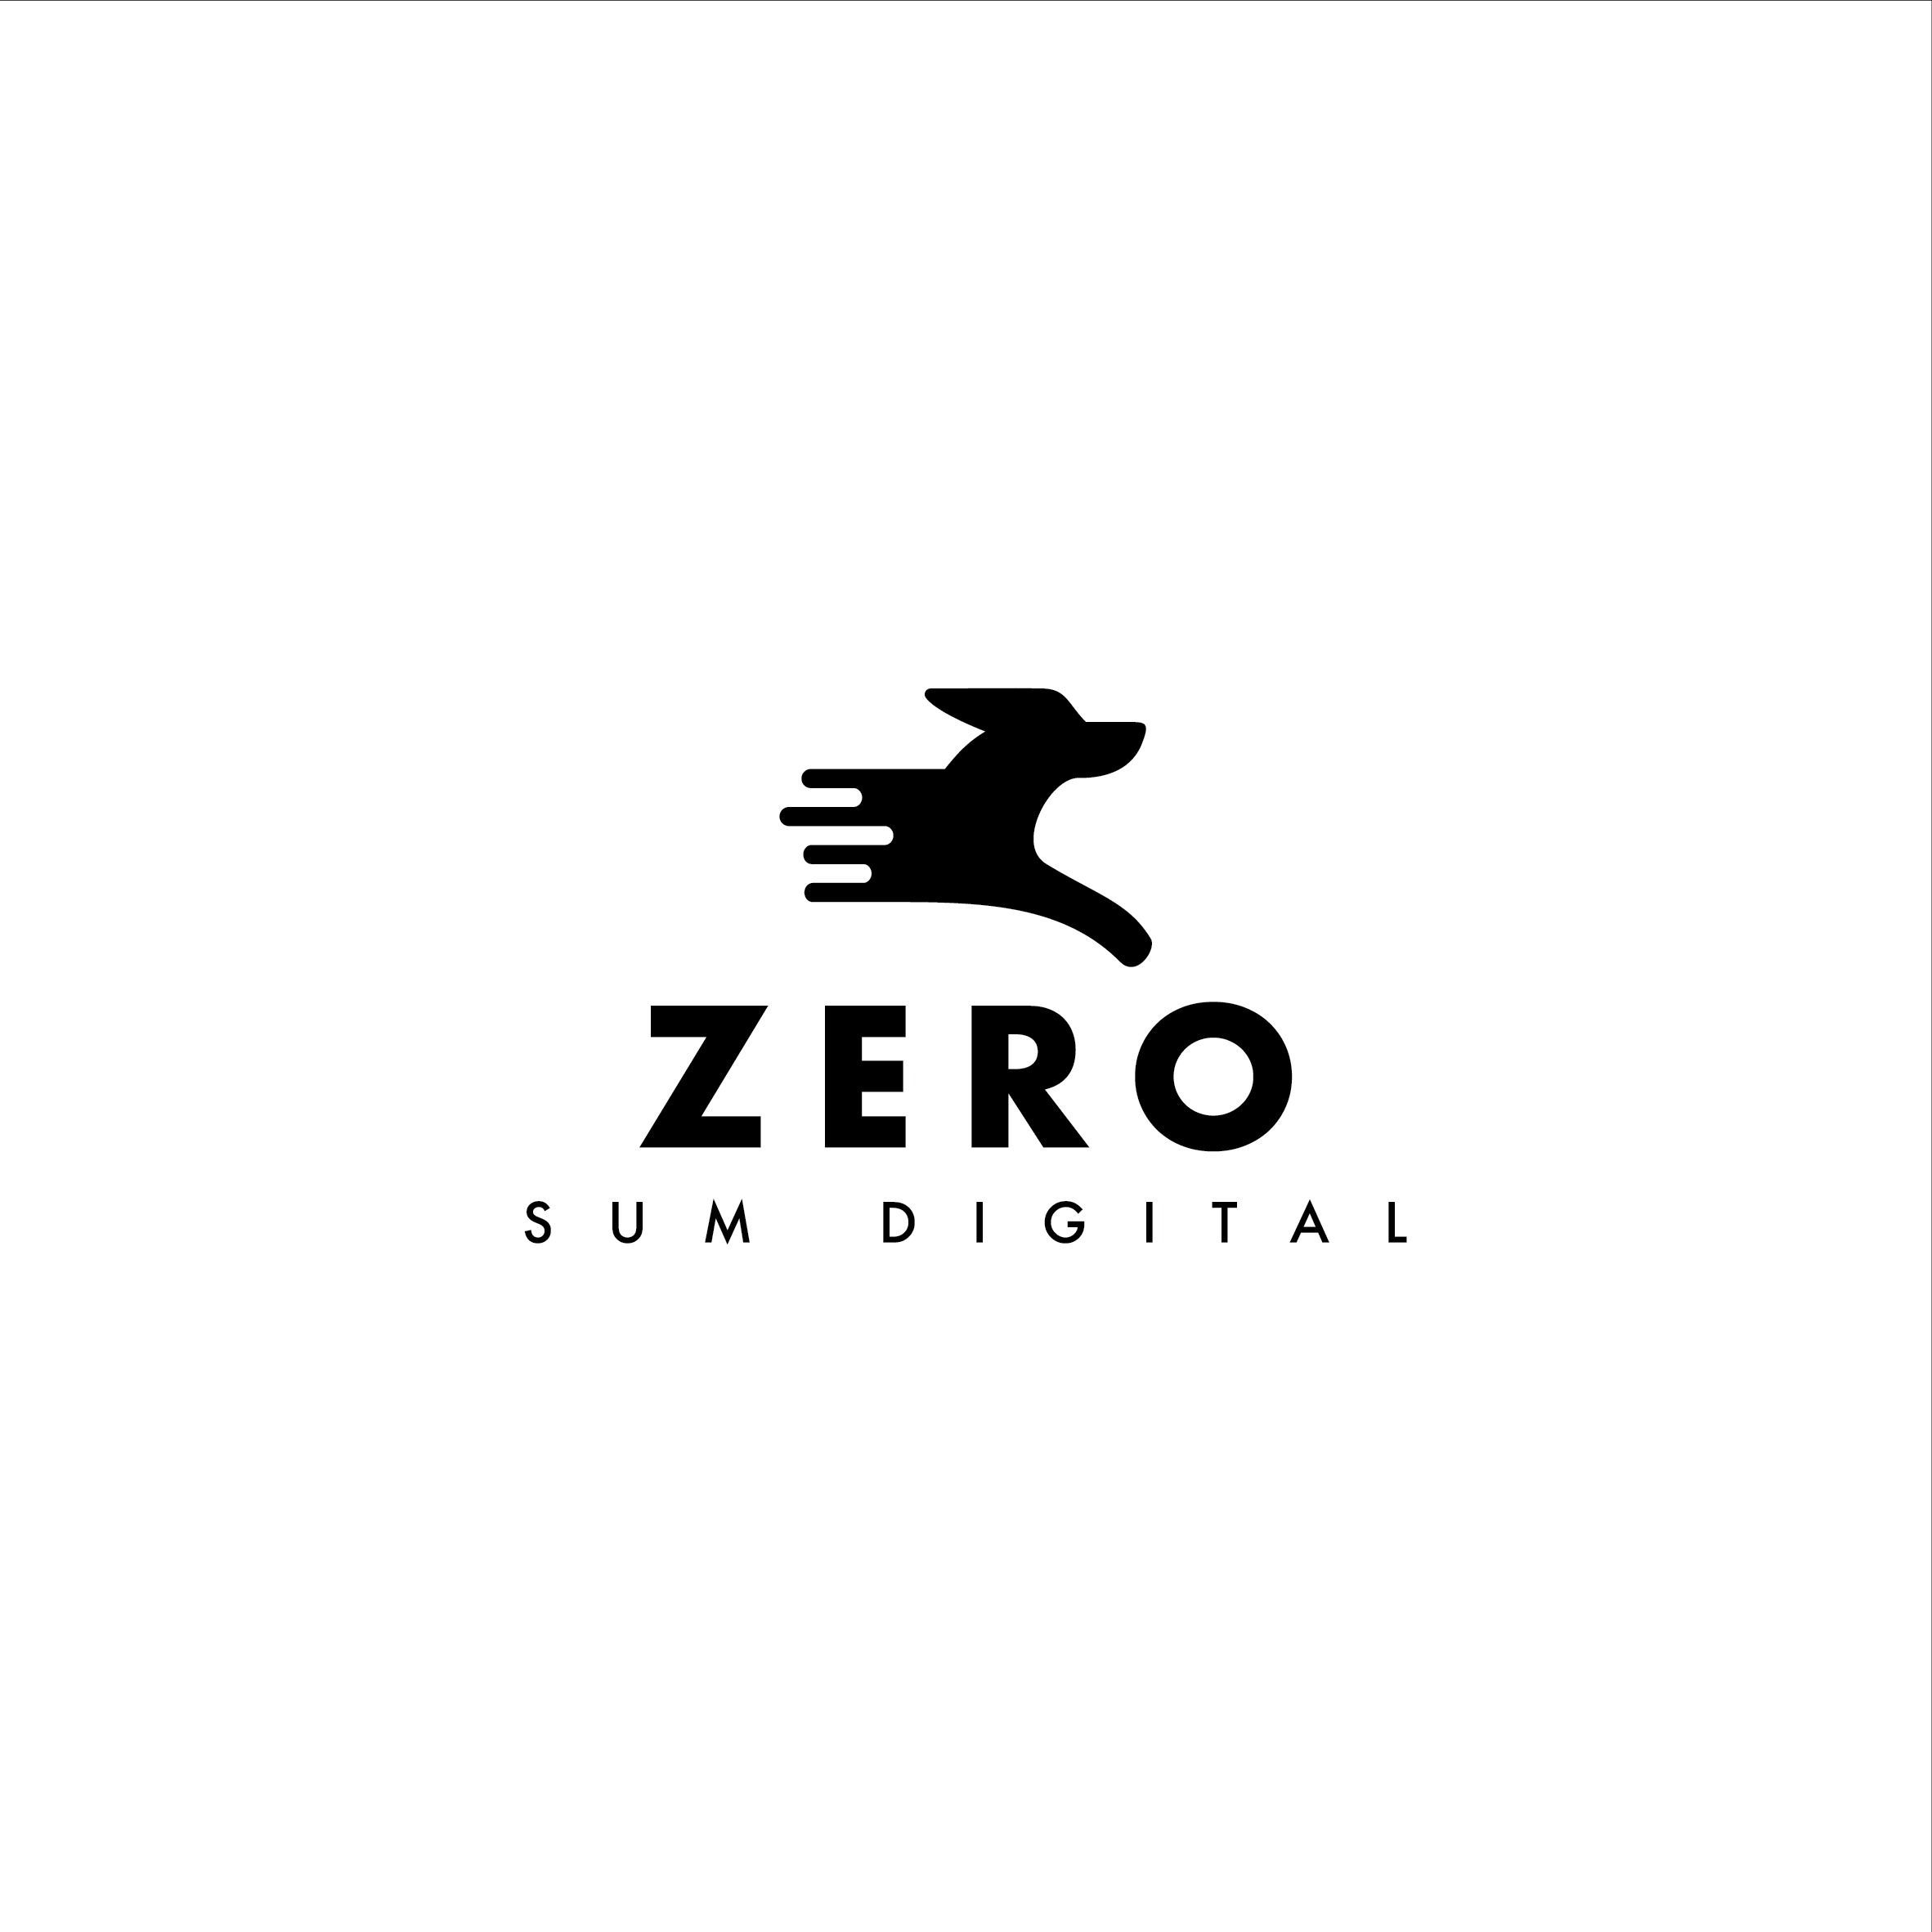 Zero Sum Digital Chapman Valley